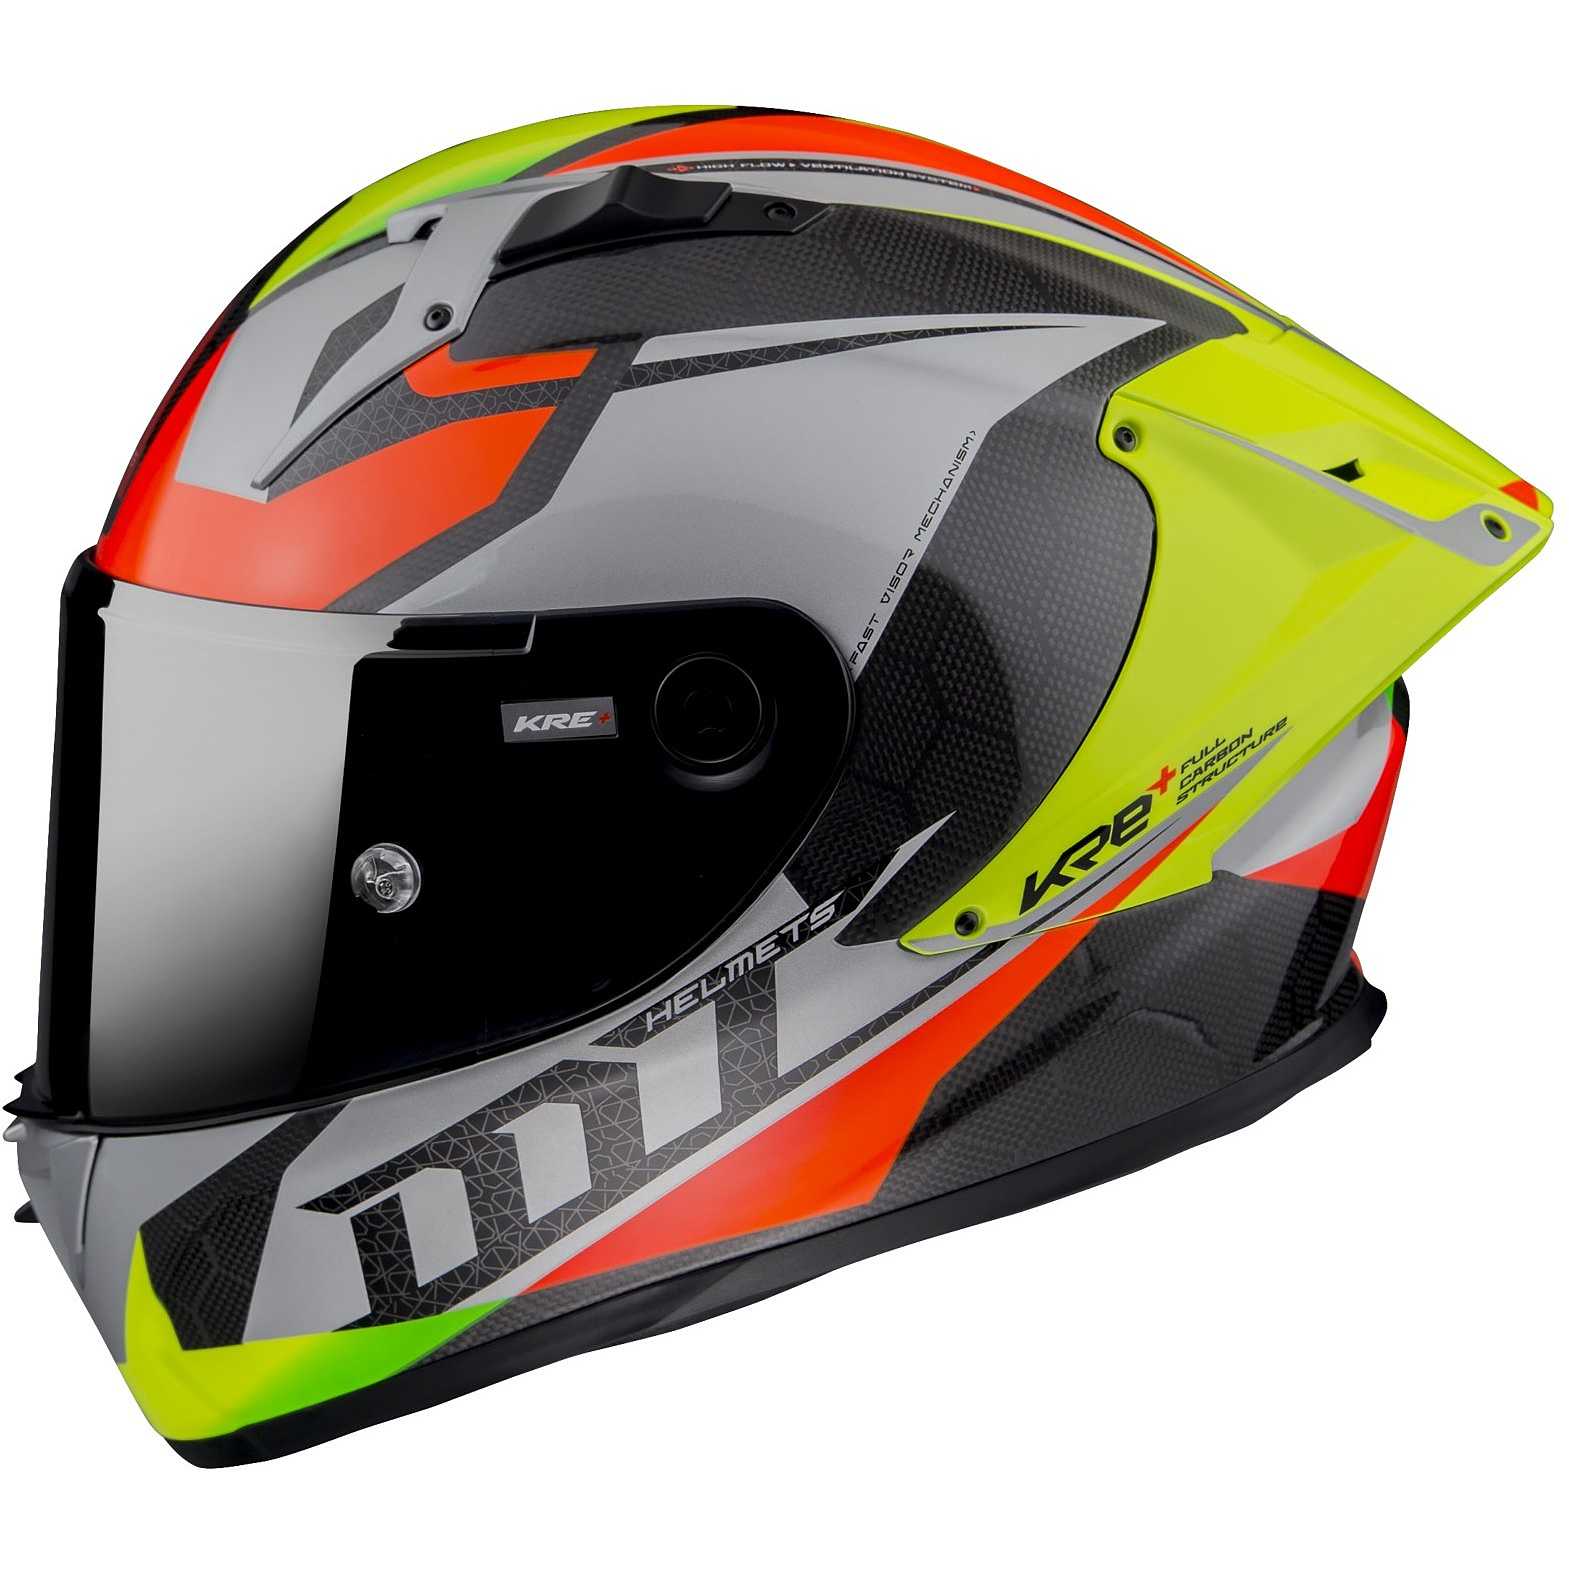 Buy MT Helmets Rapide Pro Master B5 Helmet - Red Fluo Online